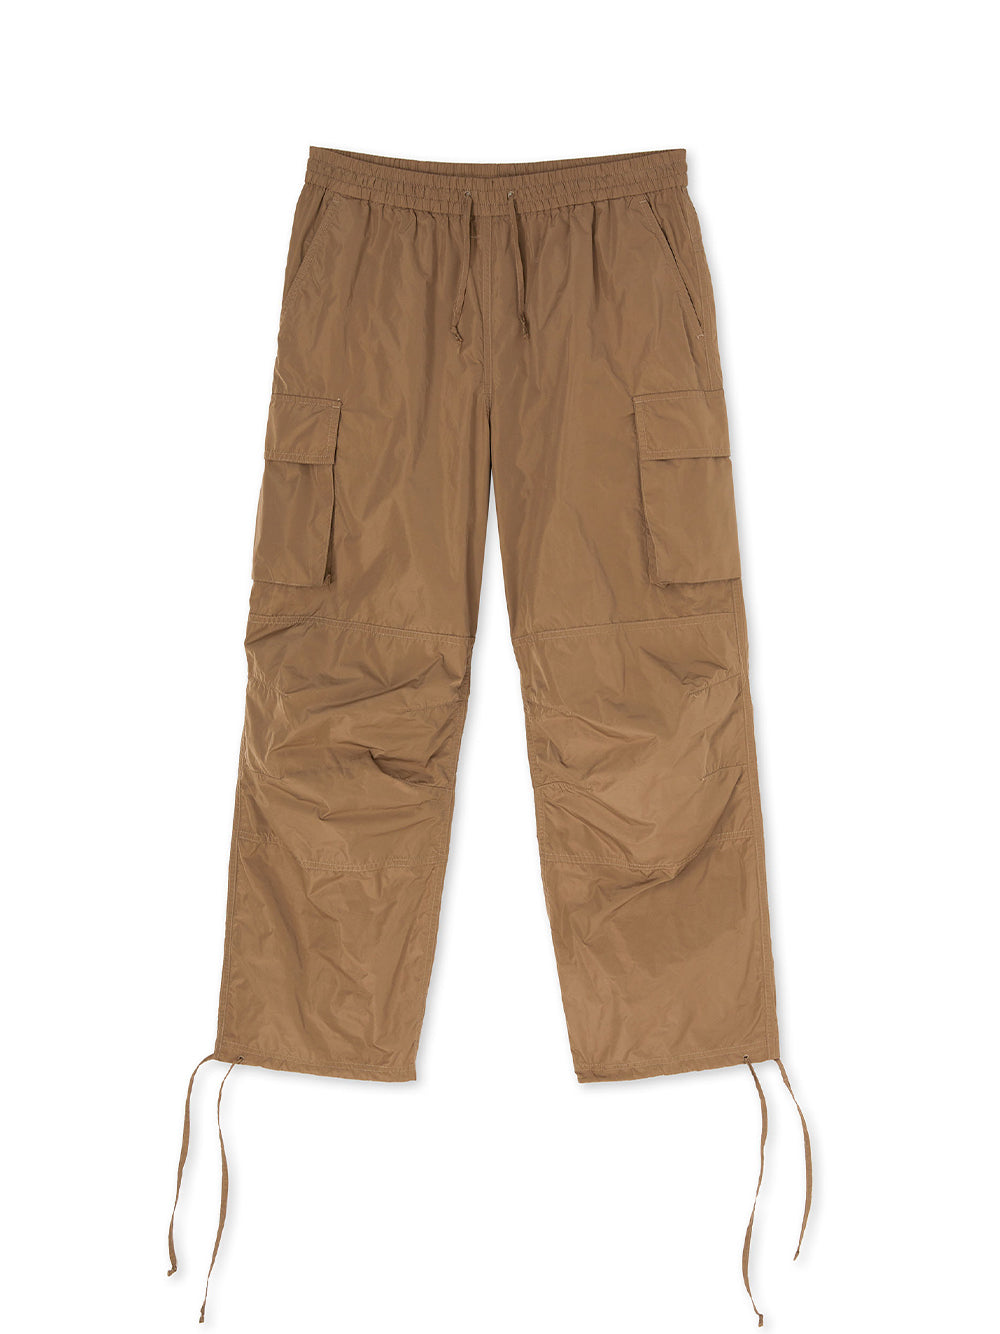 Pantalone/pants Military Green